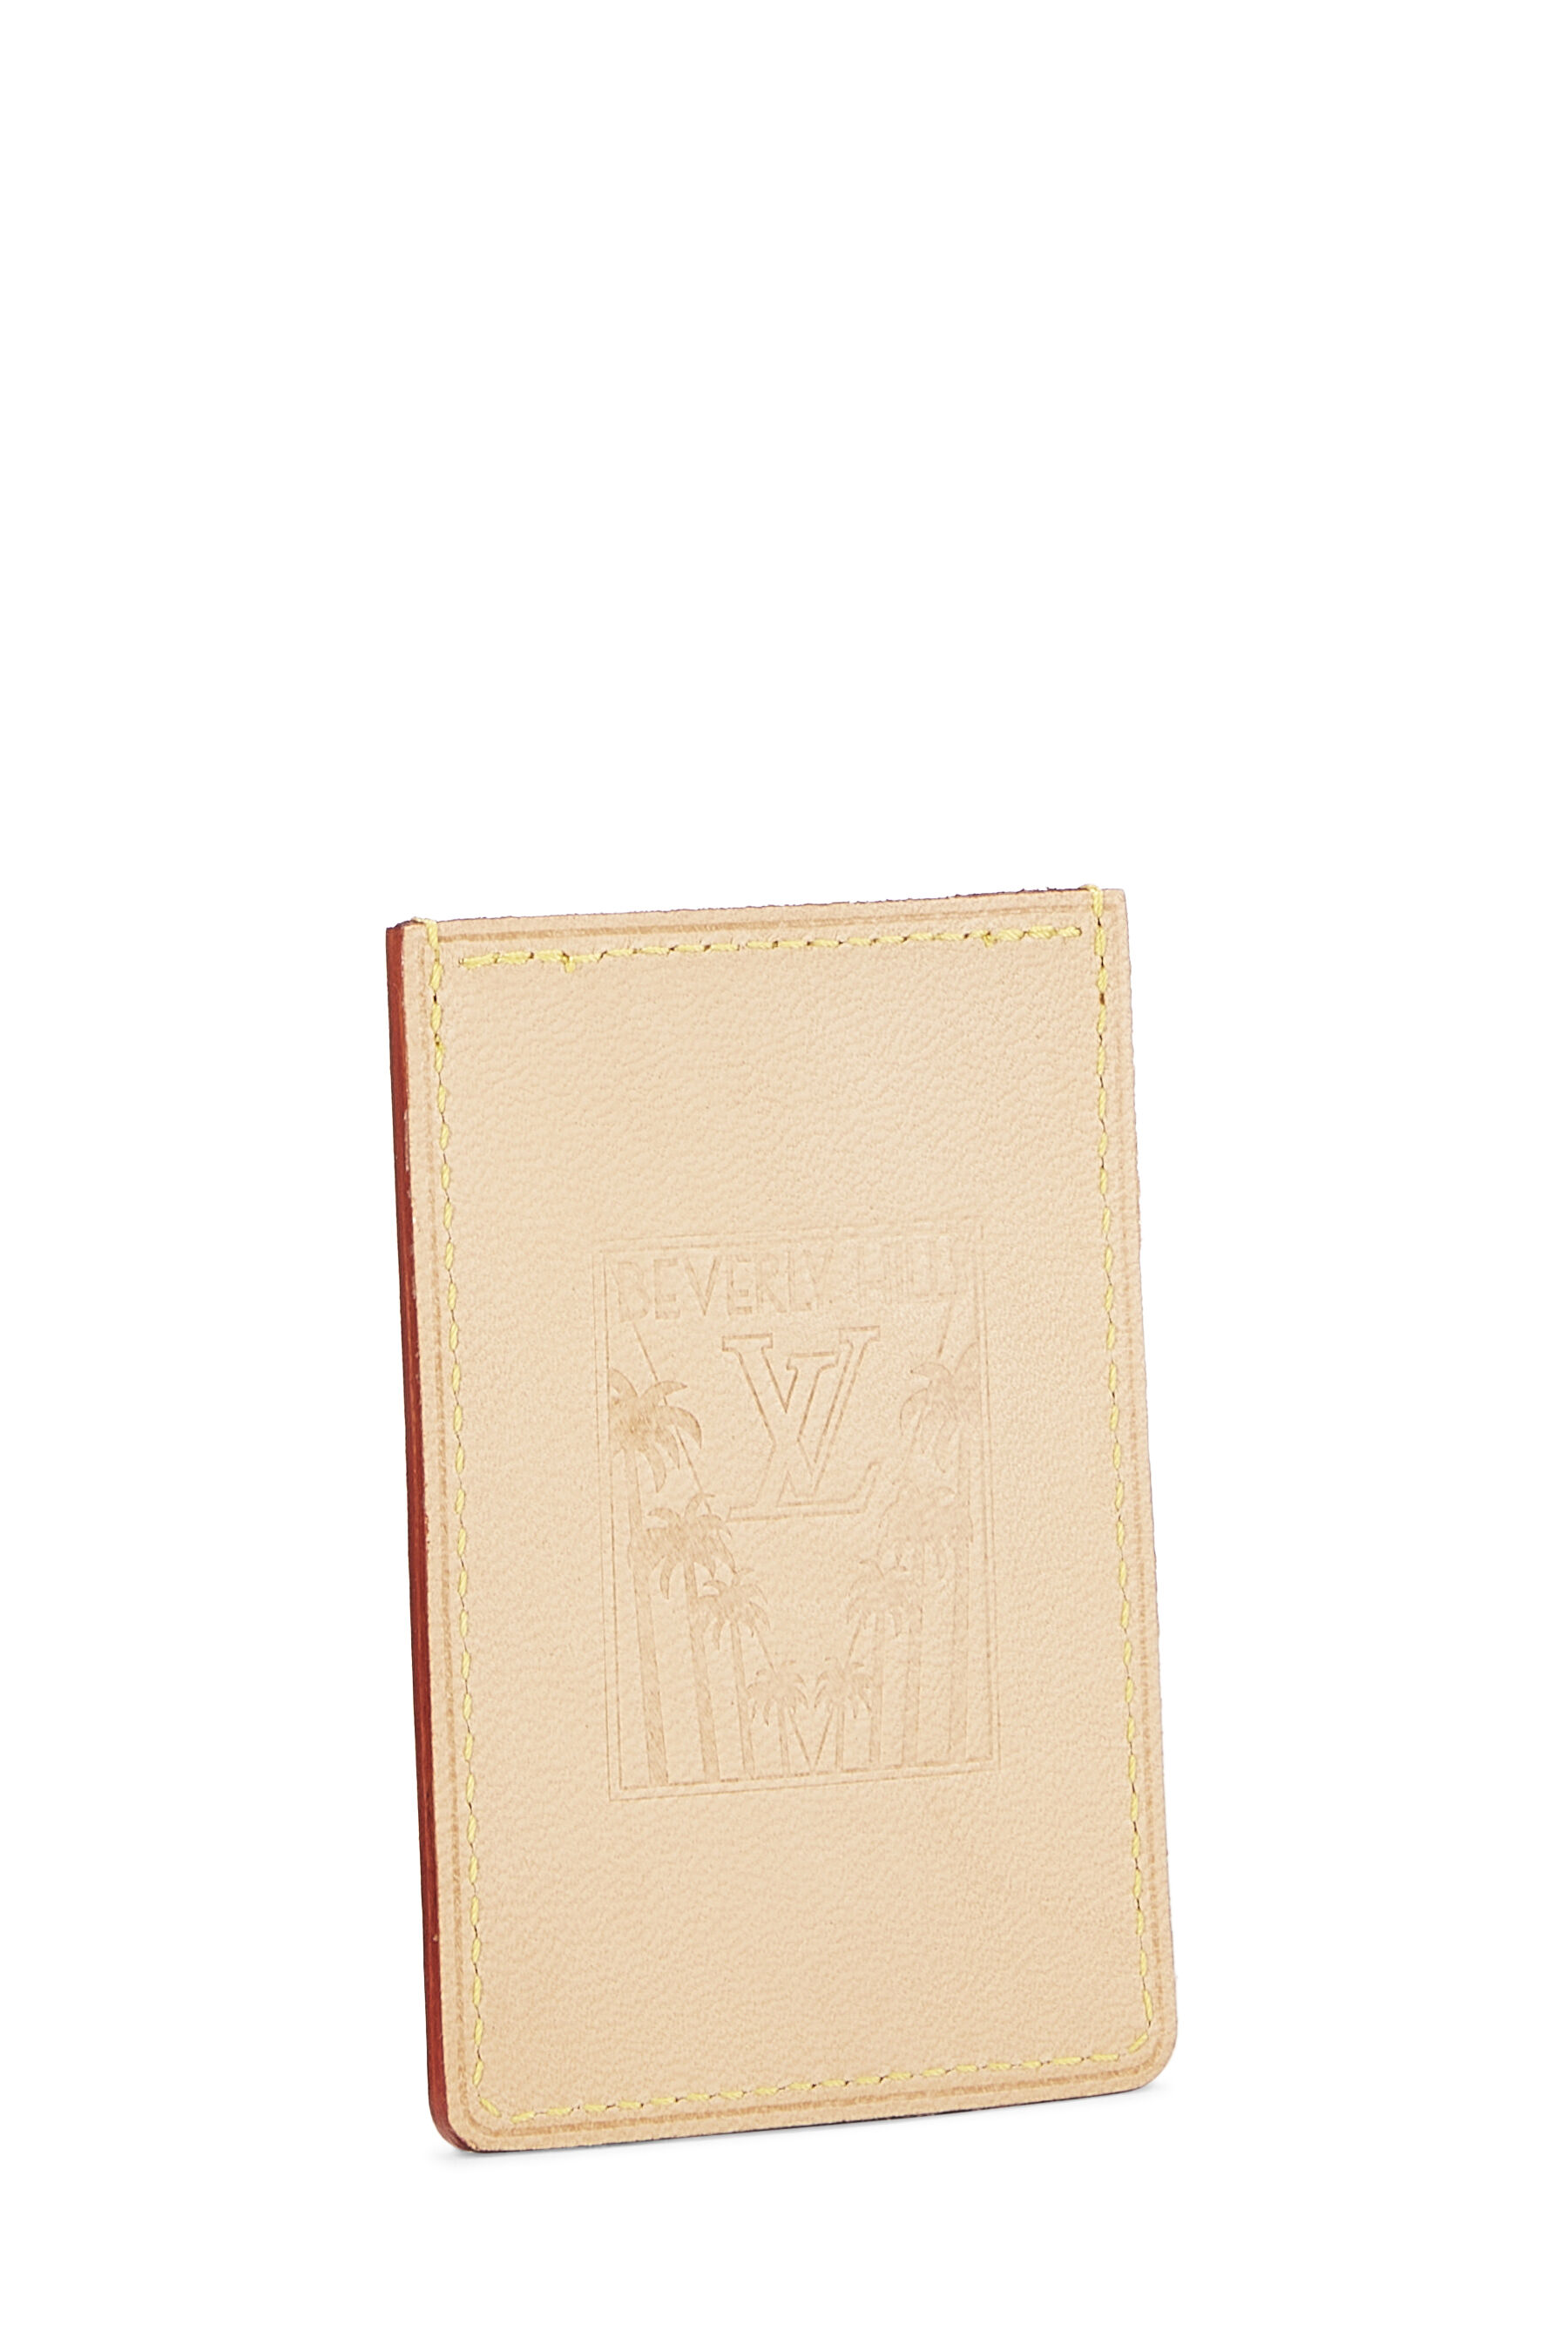 Louis Vuitton - Natural Vachetta Beverly Hills Card Holder